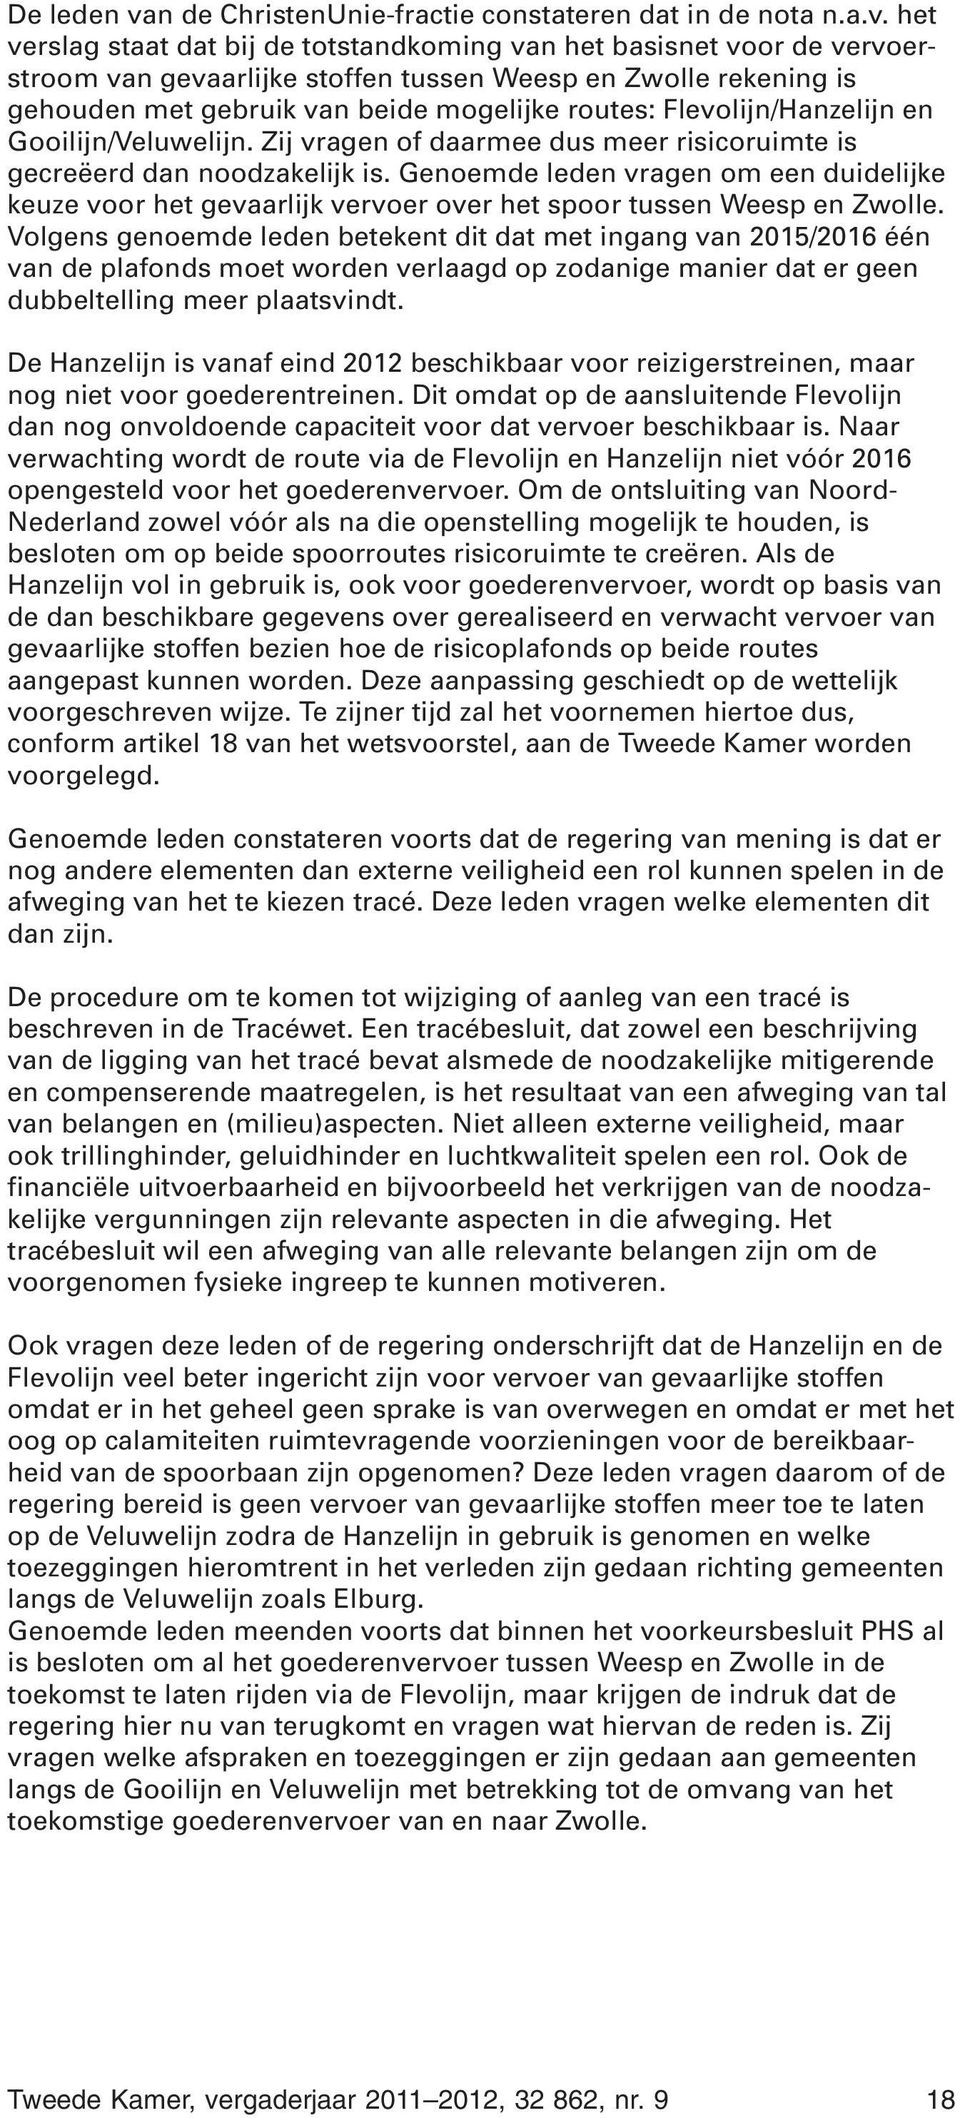 het verslag staat dat bij de totstandkoming van het basisnet voor de vervoerstroom van gevaarlijke stoffen tussen Weesp en Zwolle rekening is gehouden met gebruik van beide mogelijke routes: